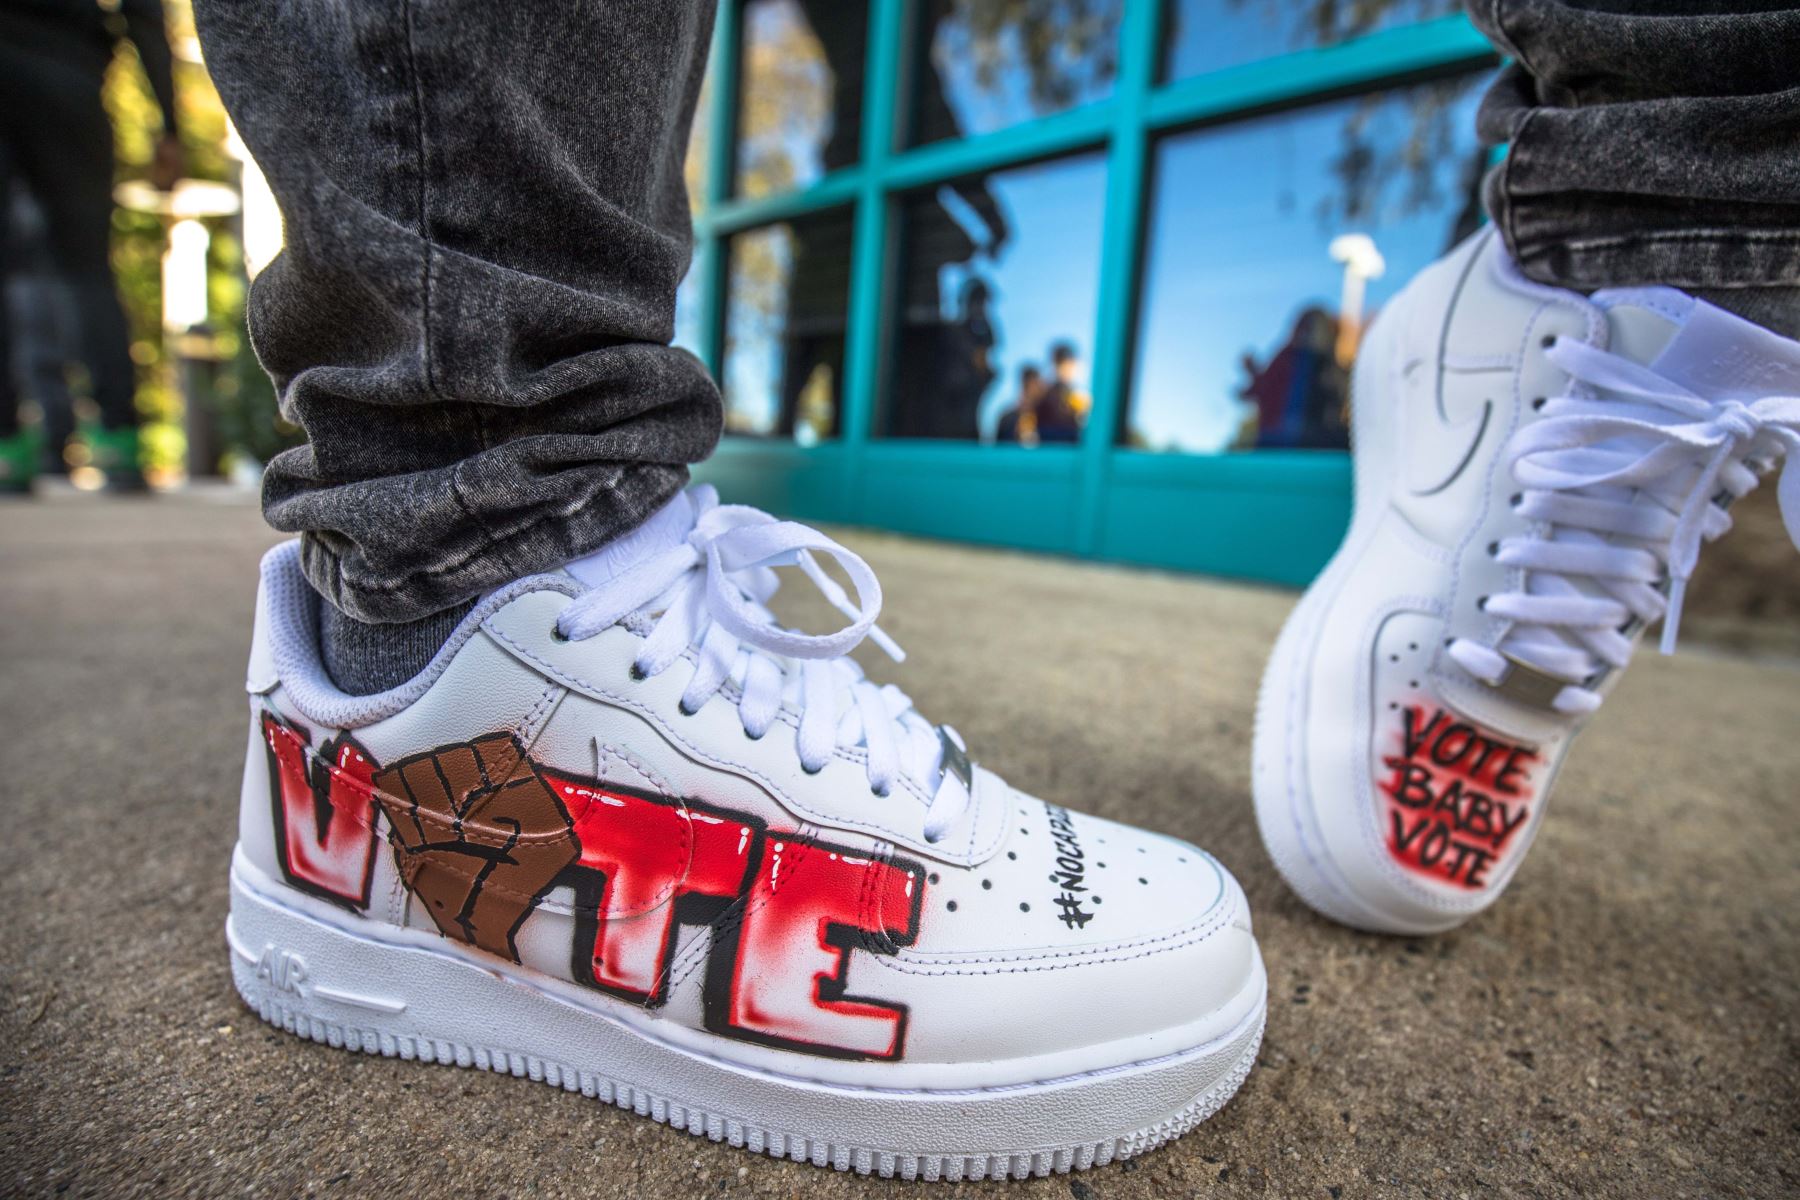 El artista nominado al Grammy "DaBaby" muestra sus zapatos mientras promueve sus esfuerzos de apoyo a los votantes, "Vote Baby Vote", al organizar un evento en un lugar de votación en Charlote, Carolina del Norte. Foto: AFP